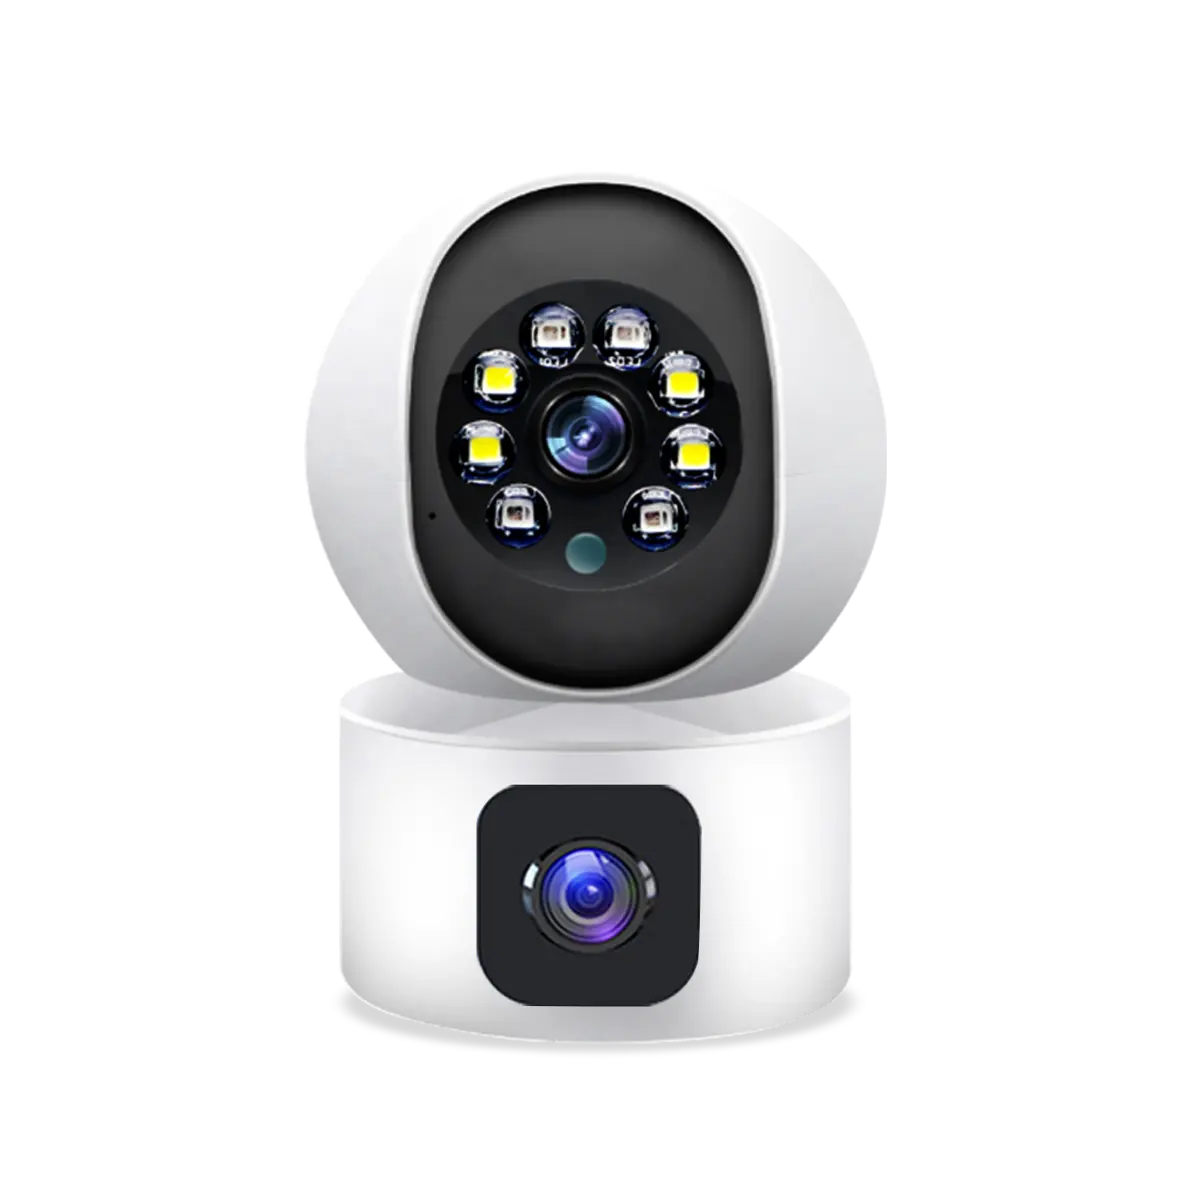 Venta caliente 3 MP H.264 visión nocturna detección de movimiento cámara CCTV cámara interior domo de vigilancia cámara interior